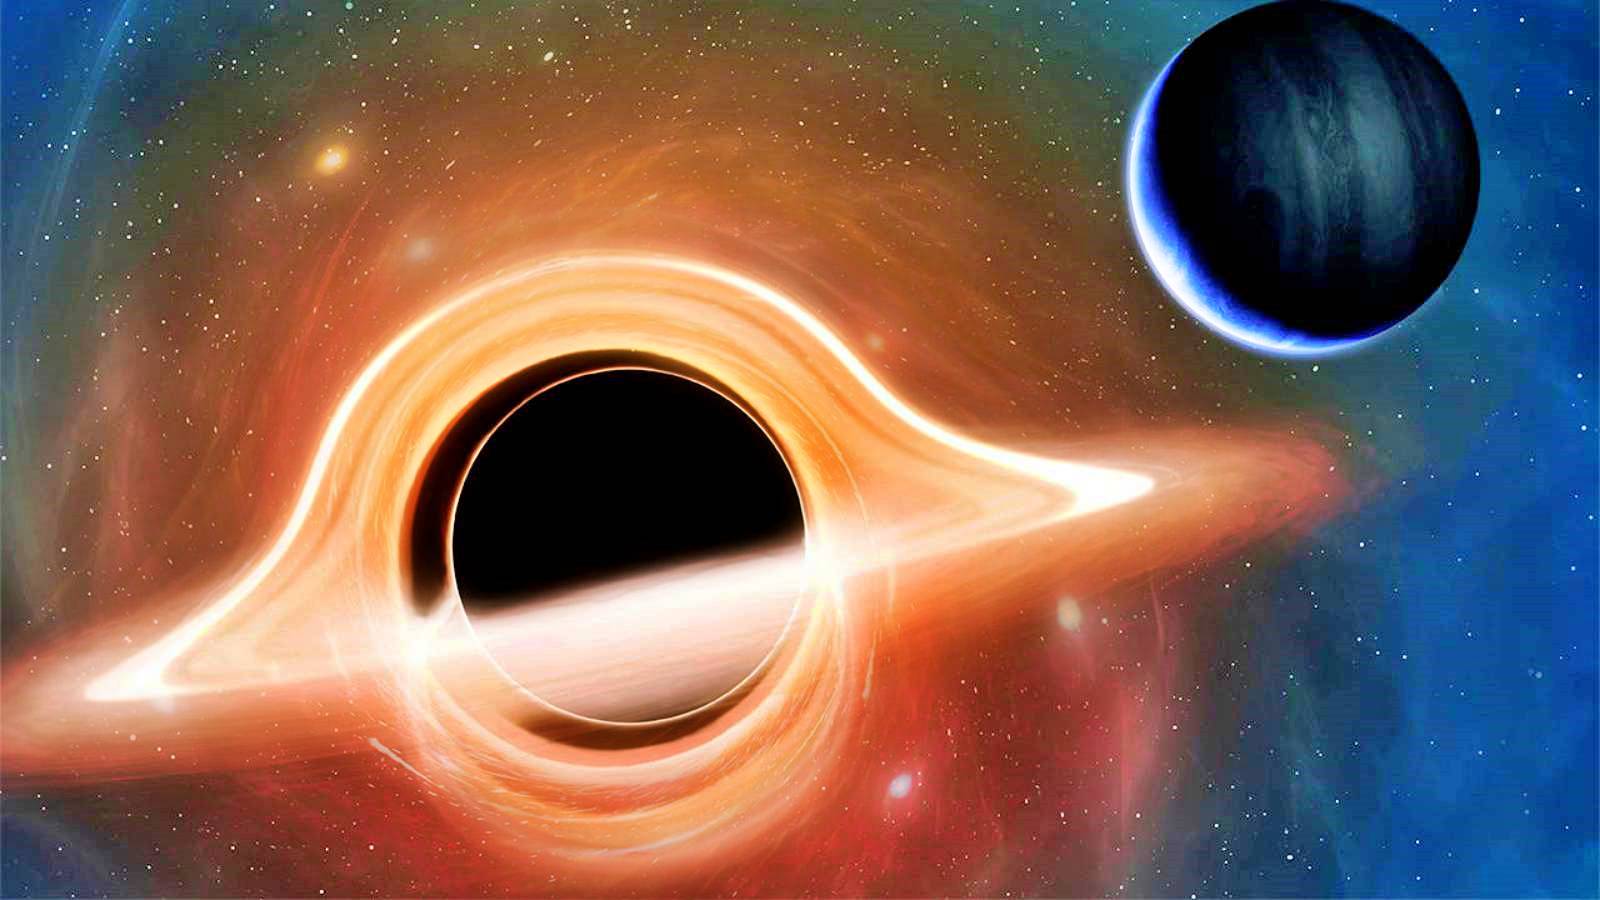 Black hole sounds